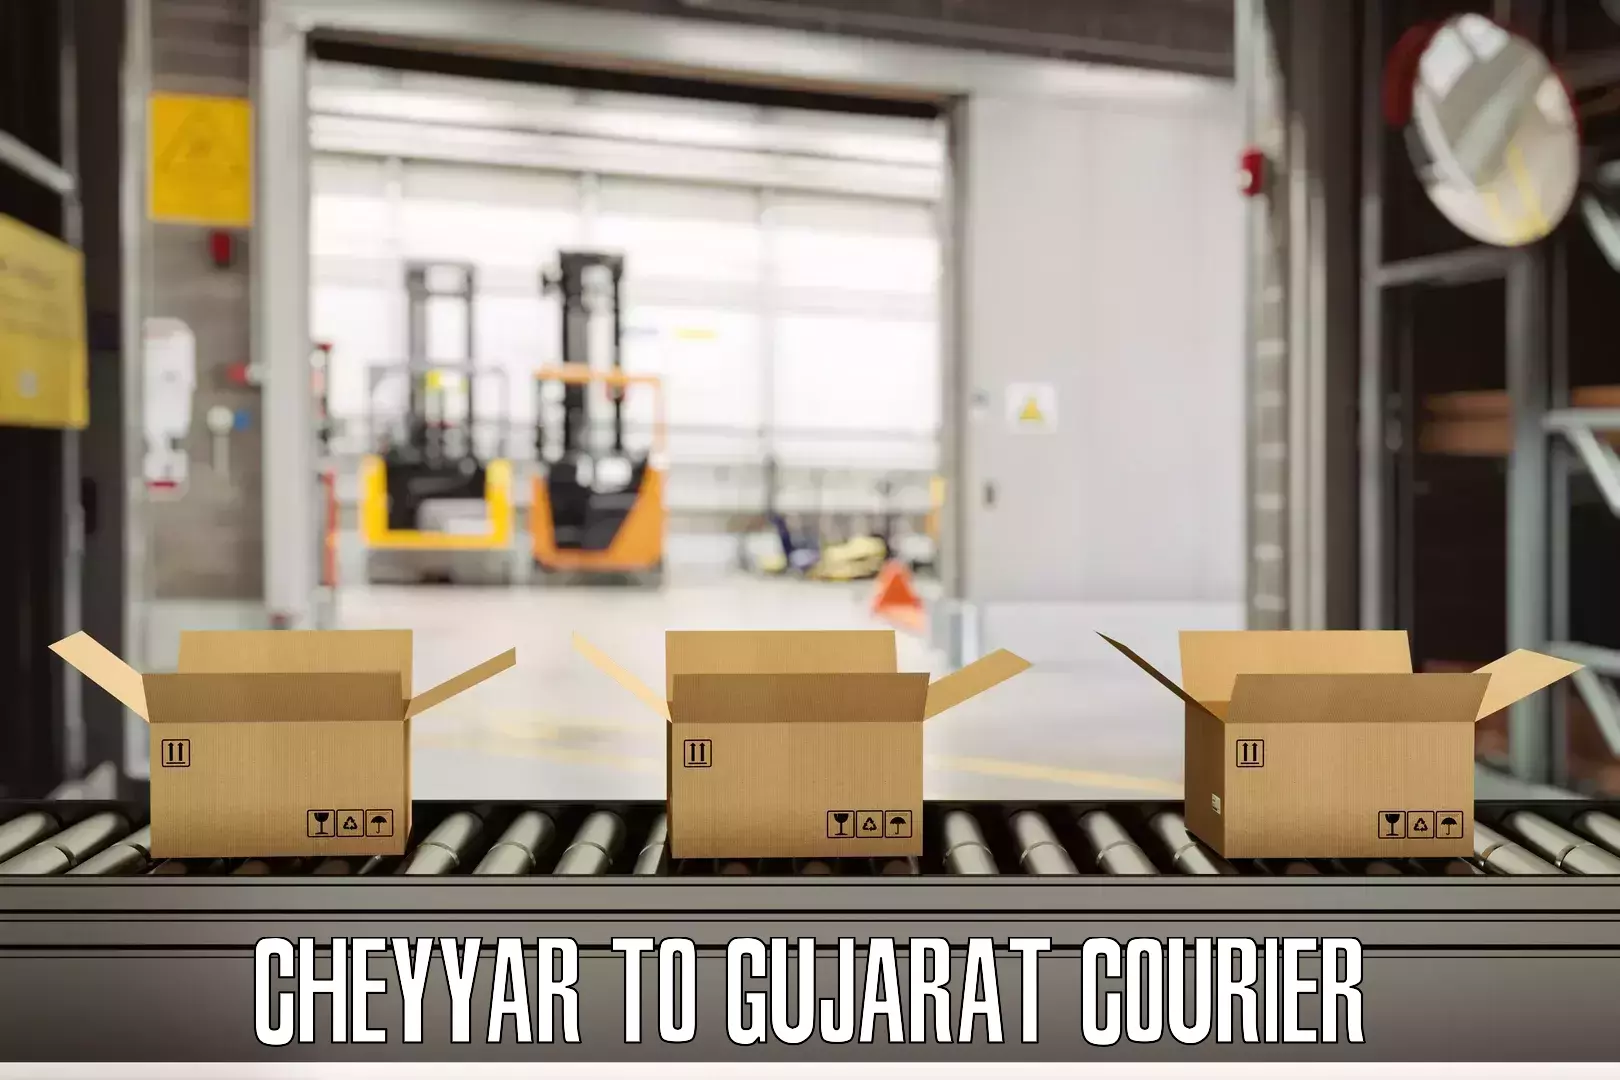 Luggage transit service Cheyyar to Gujarat